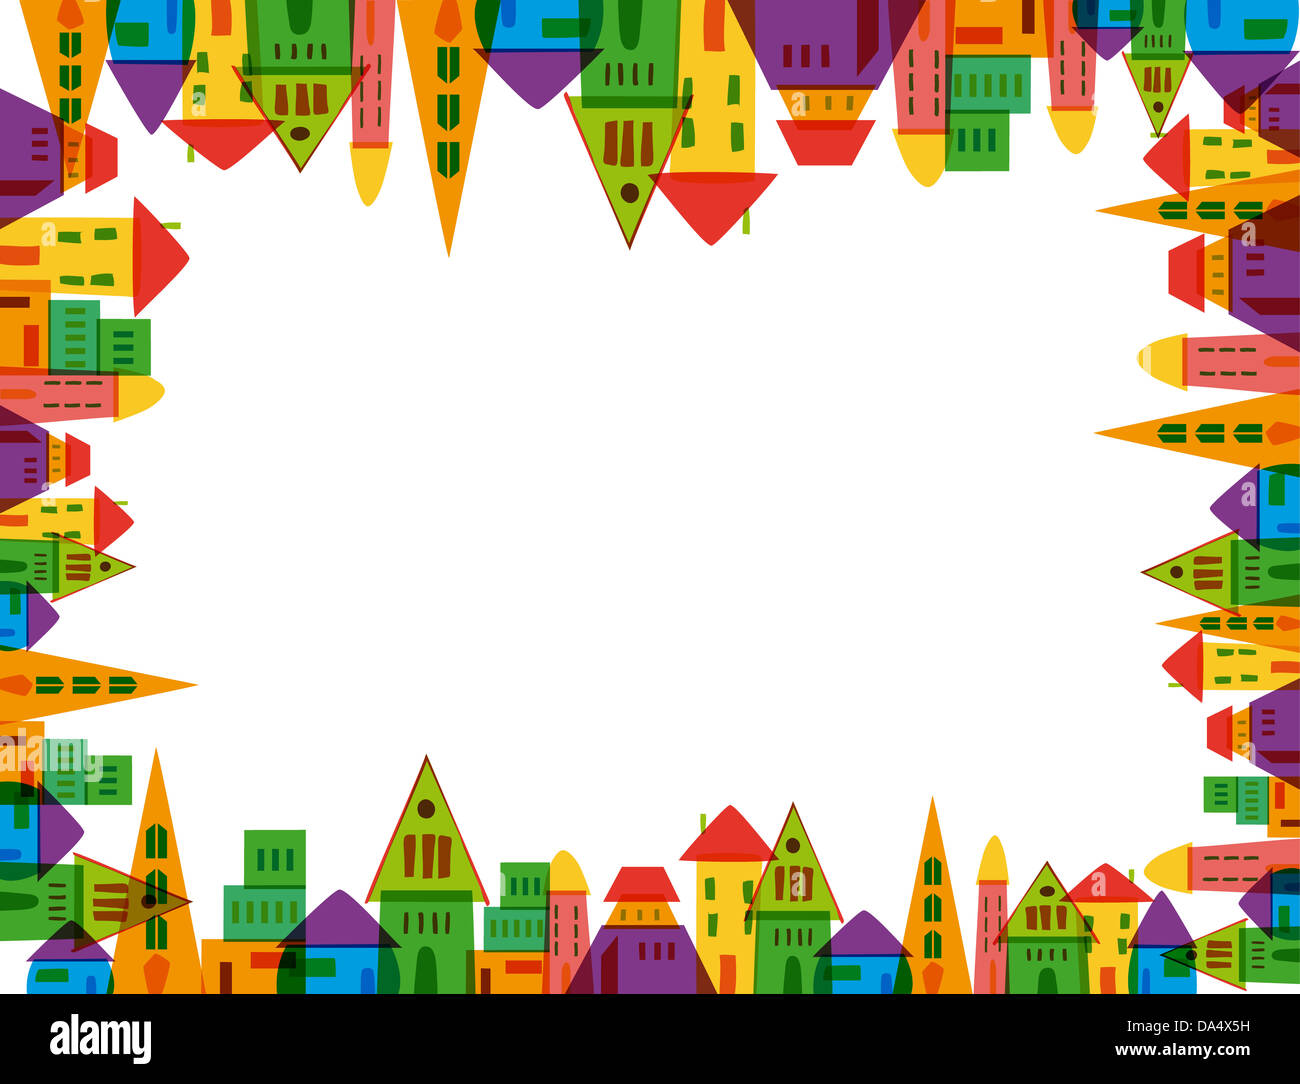 Bunte Süße Stadt Frame auf weißem Hintergrund. Vektor-Datei geschichtet für einfache Handhabung und individuelle Farbgebung. Stockfoto